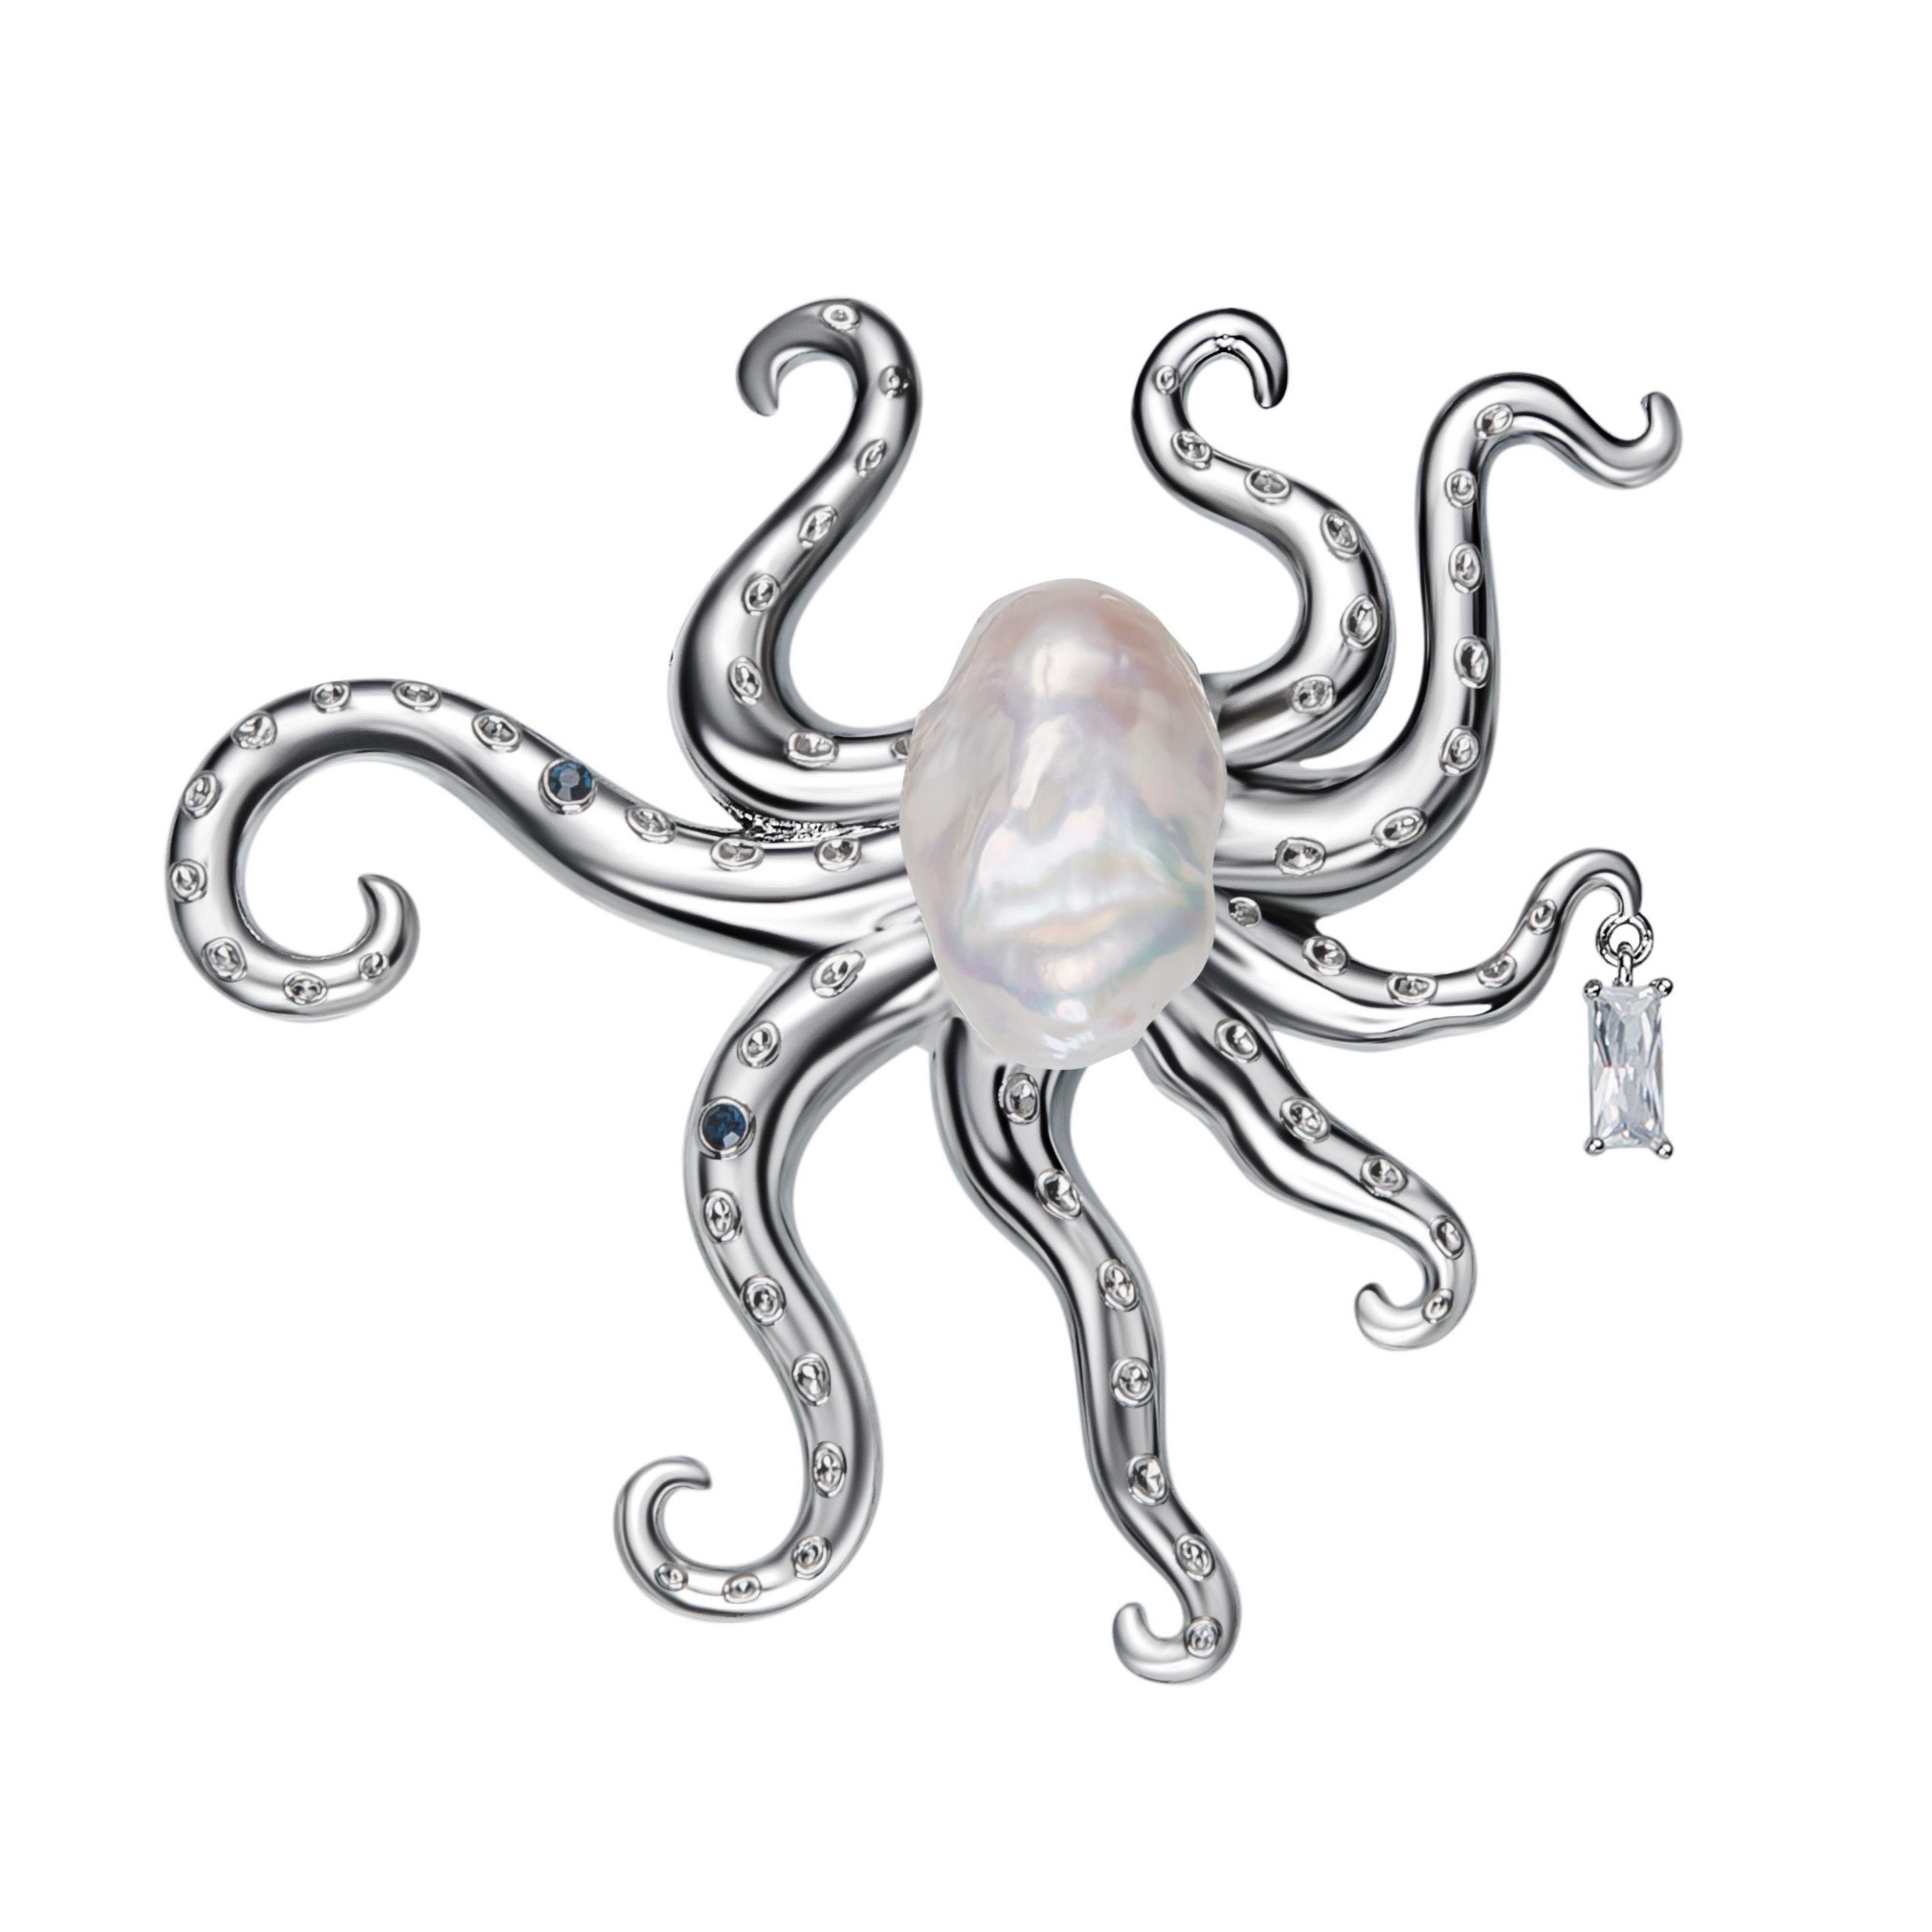 Octopus Baroque Pearl Brooch - Uniqvibe